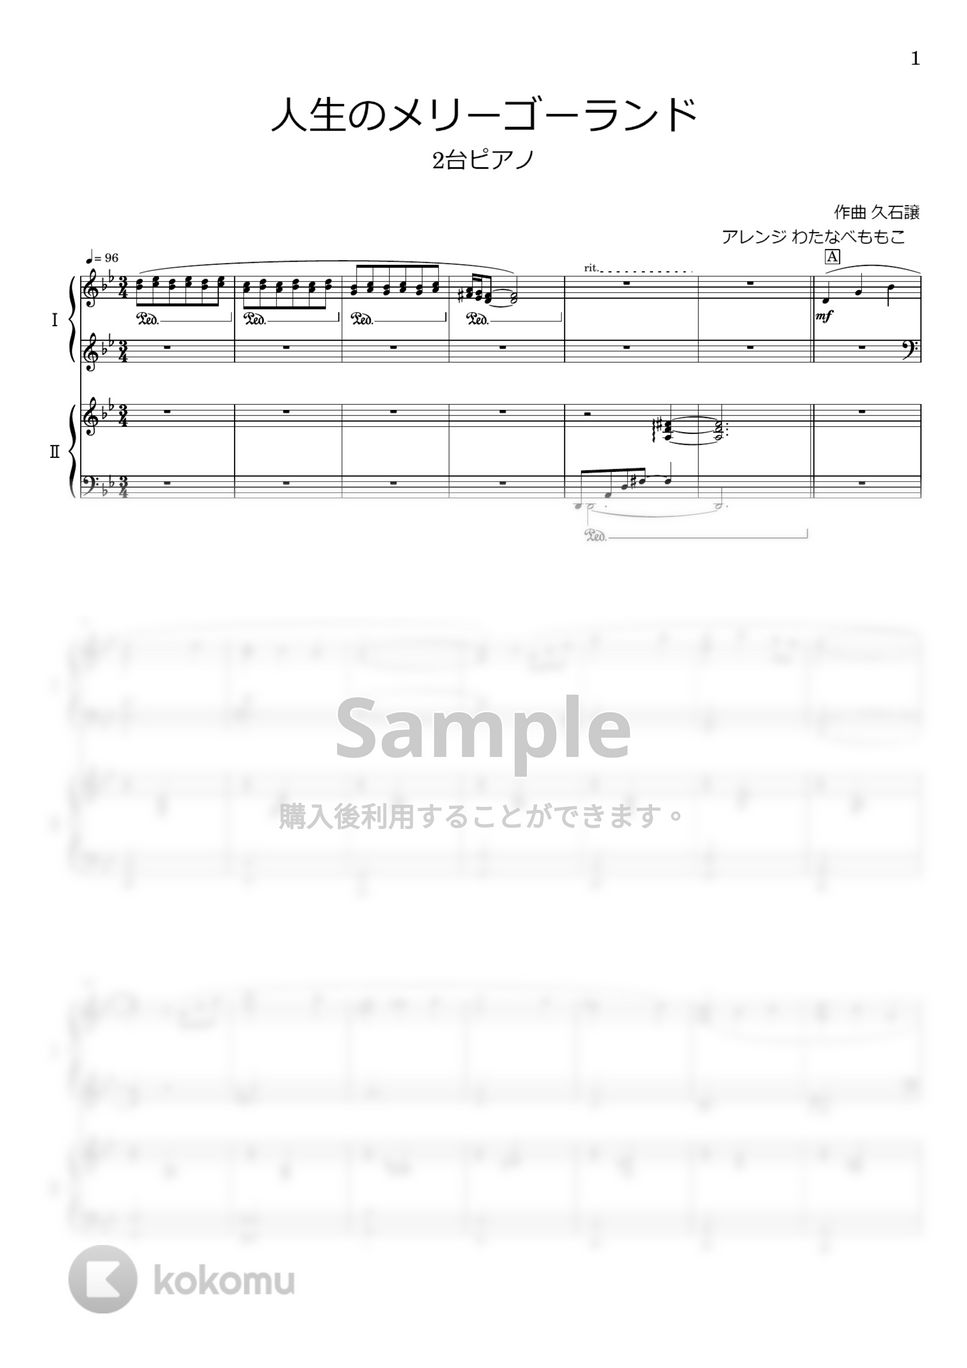 久石譲 - 人生のメリーゴーランド (2台ピアノ) by わたなべももこ